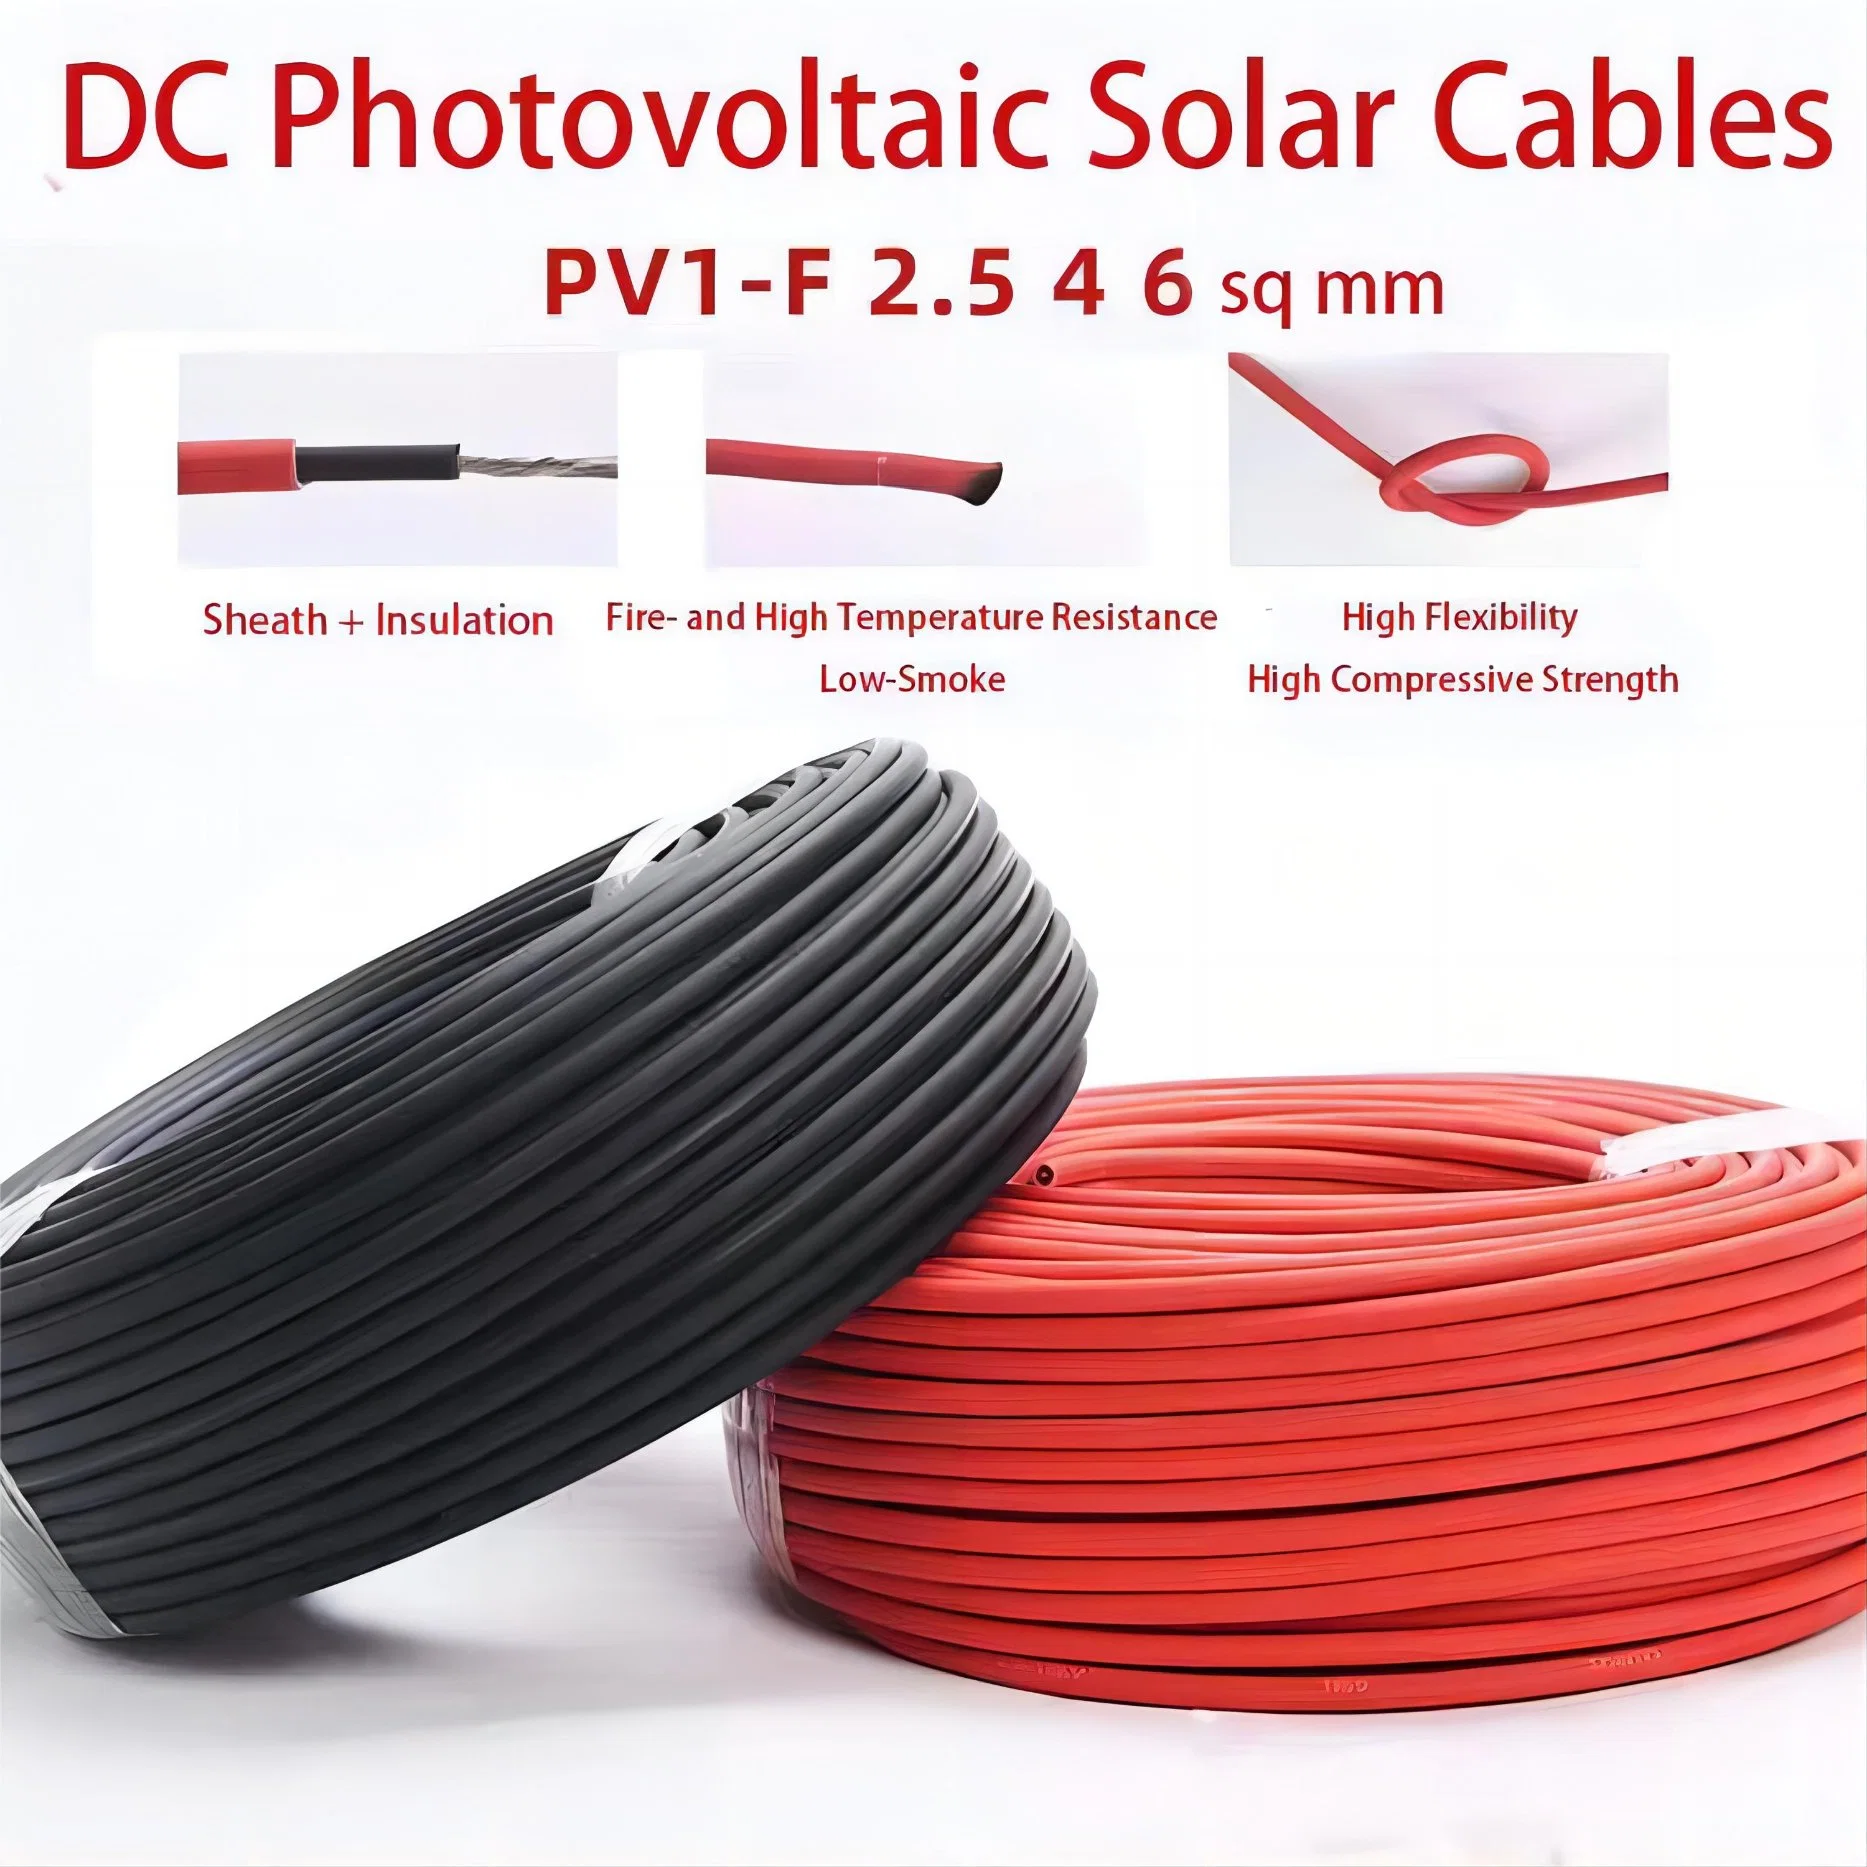 Solar cable fotovoltaico PV1-F 4/6mm llama retardante de bajo humo y. Cable de cobre estañado resistente al fuego sin halógenos